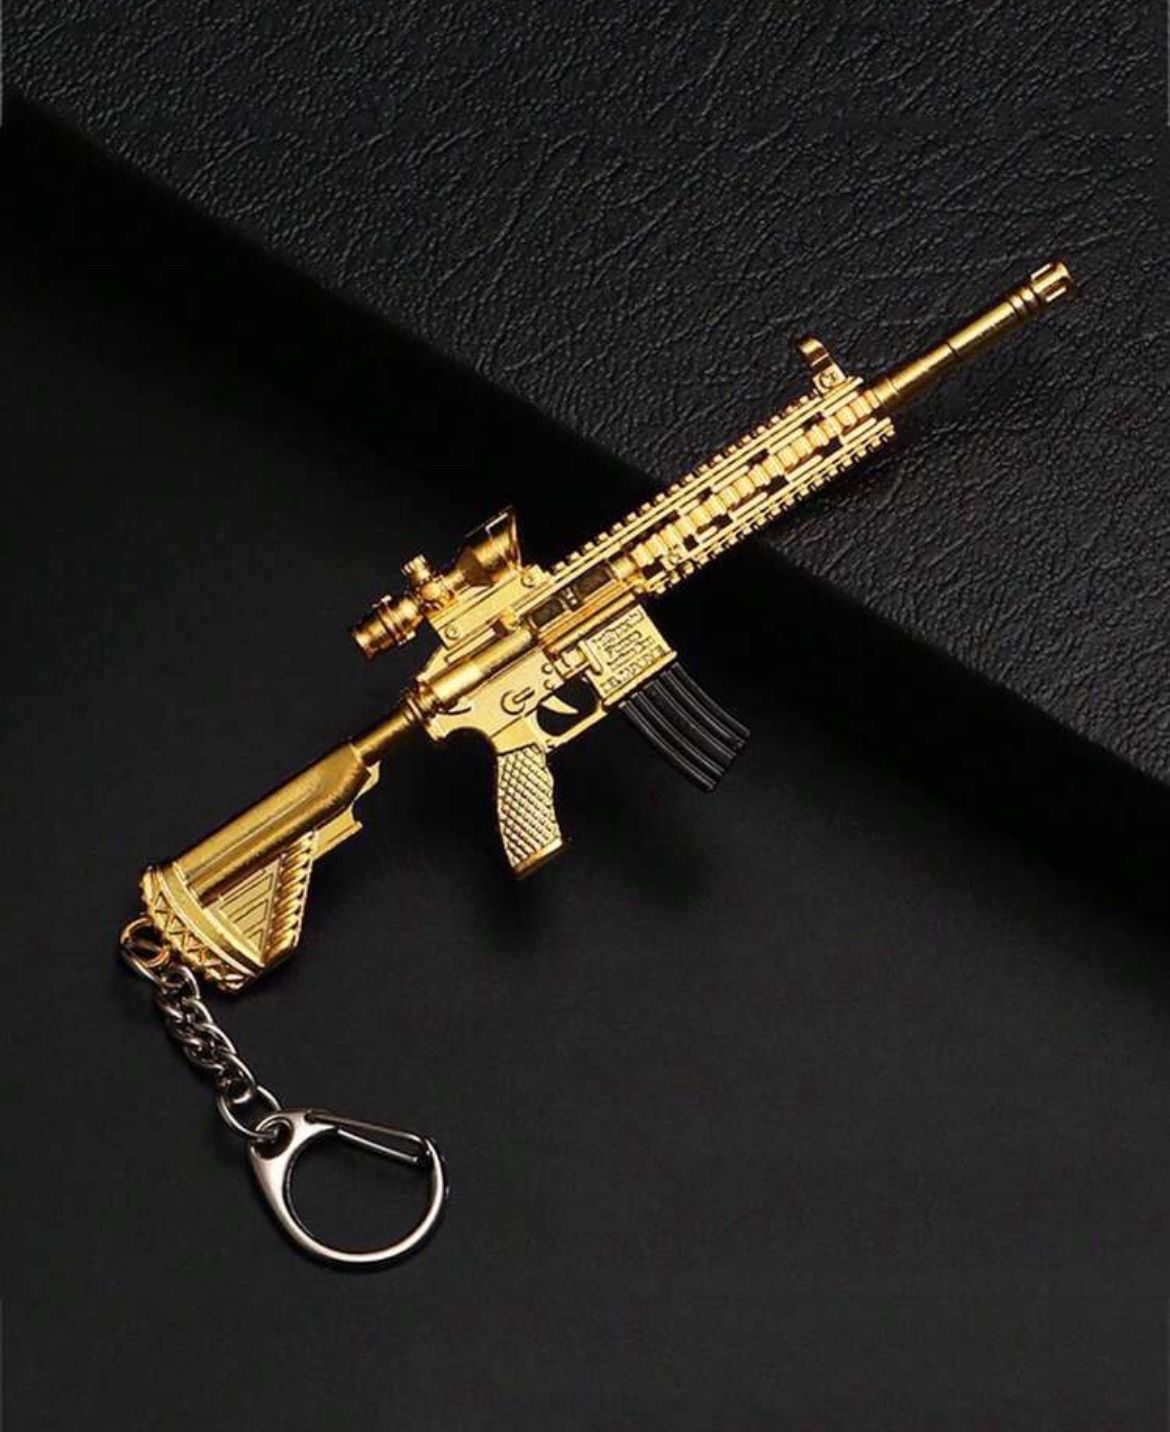 gun keychain pendant gift toy